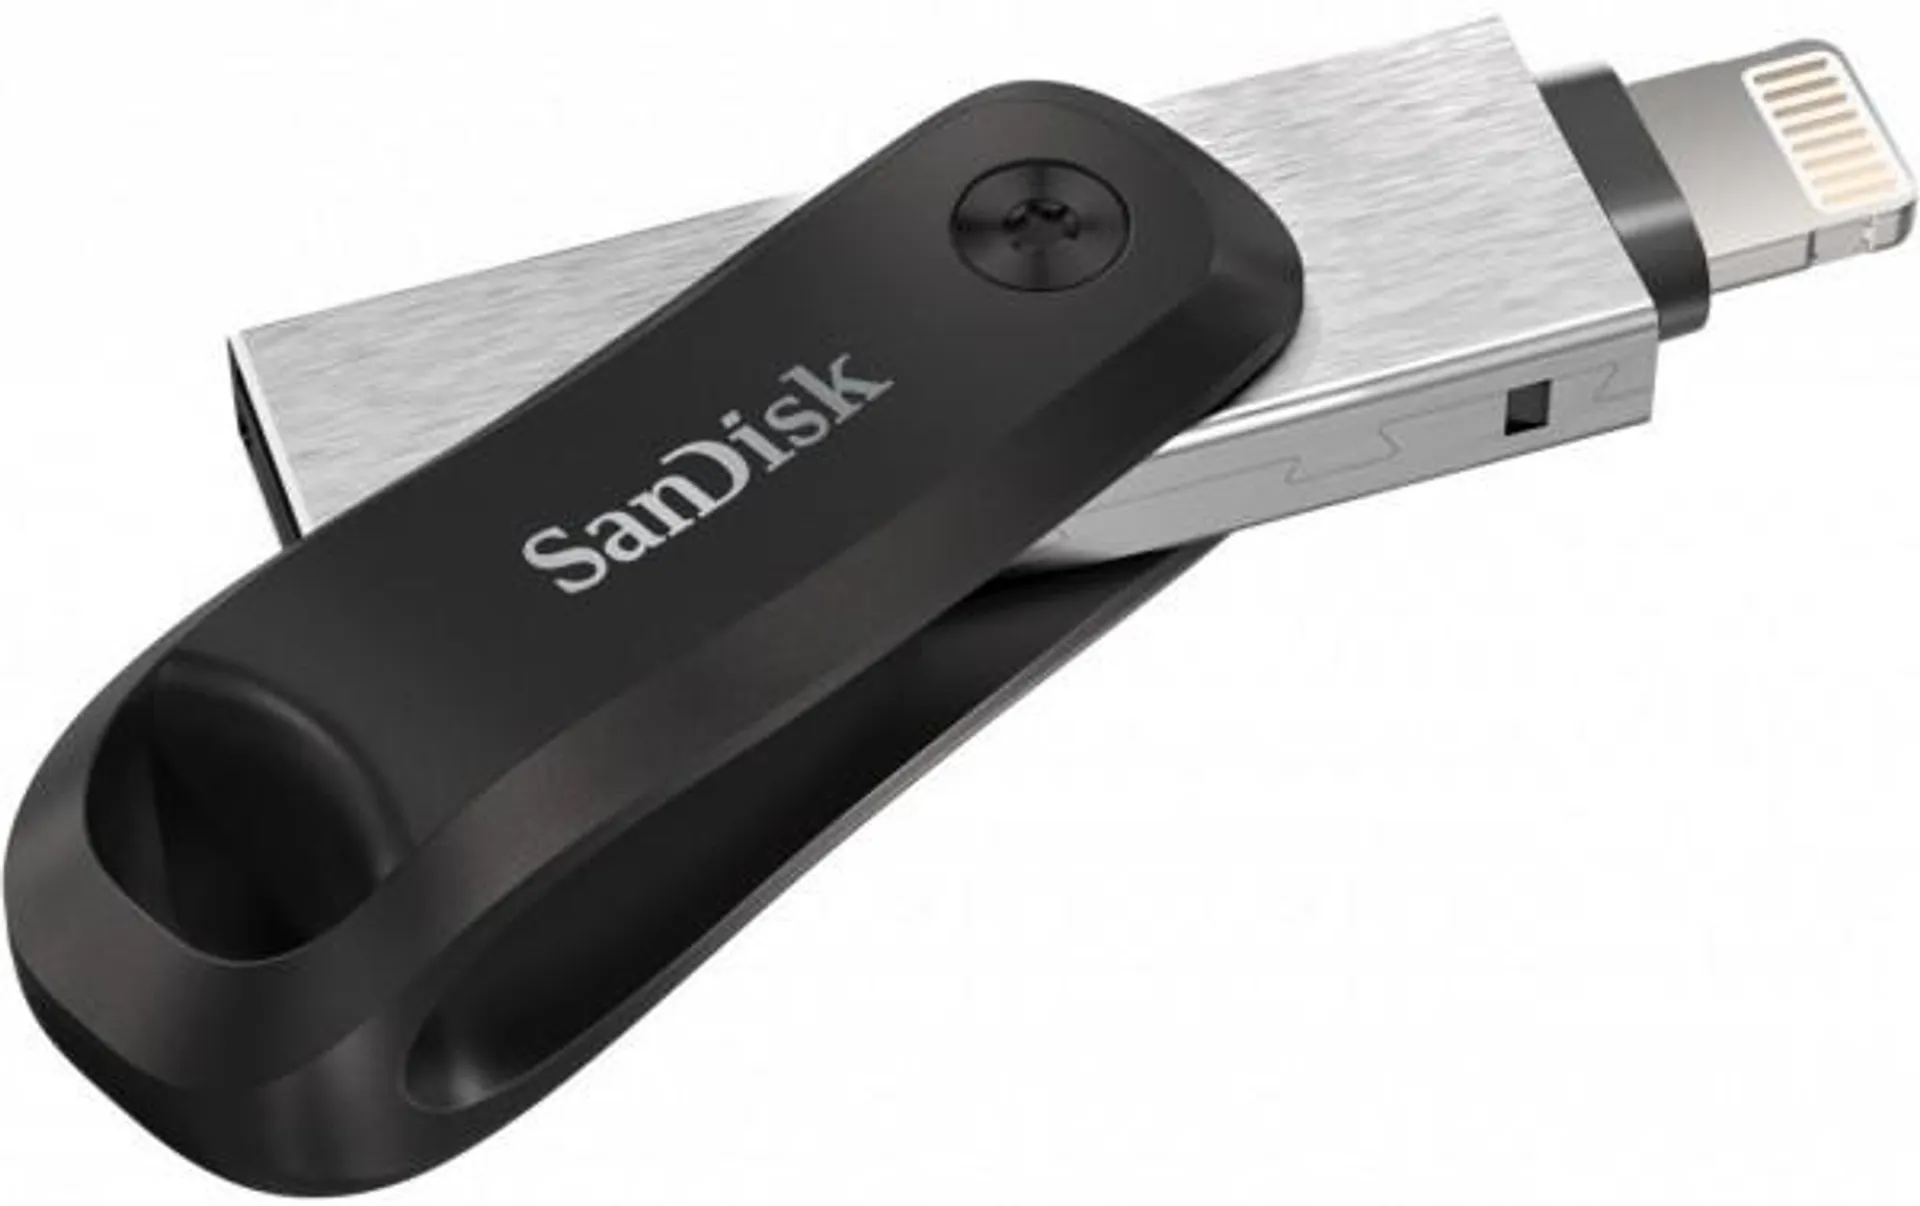 Sandisk iXpand Go USB 3.0 (128GB) Speicherstick silber